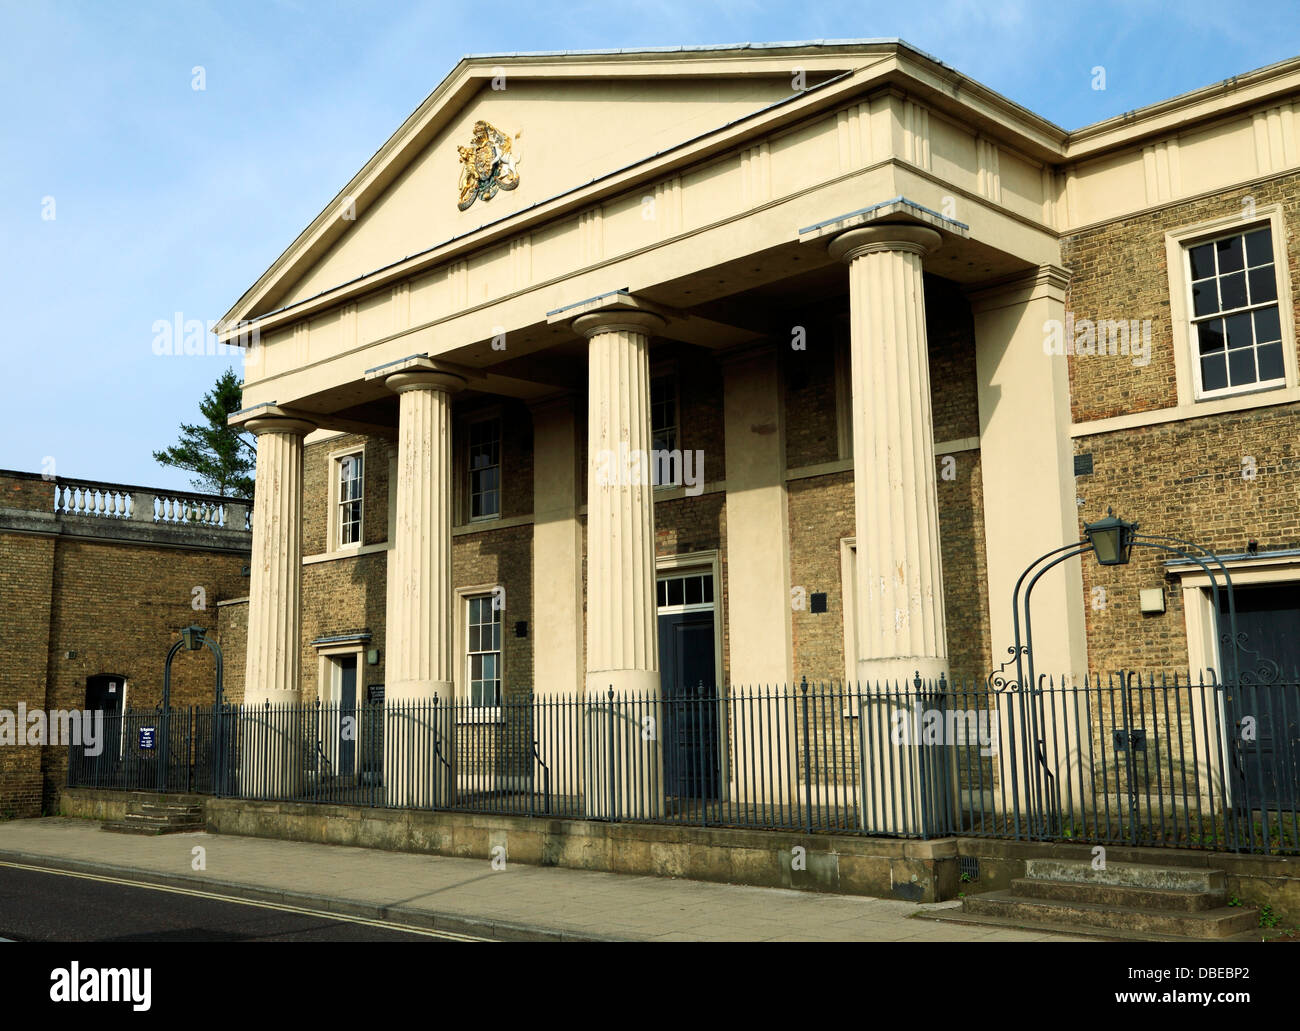 Ely Magistrates Court Gerichte Gebäude aus dem 19. Jahrhundert Cambridgeshire England UK Englisch Gerichtsgebäude Gerichtsgebäuden Architektur Stockfoto